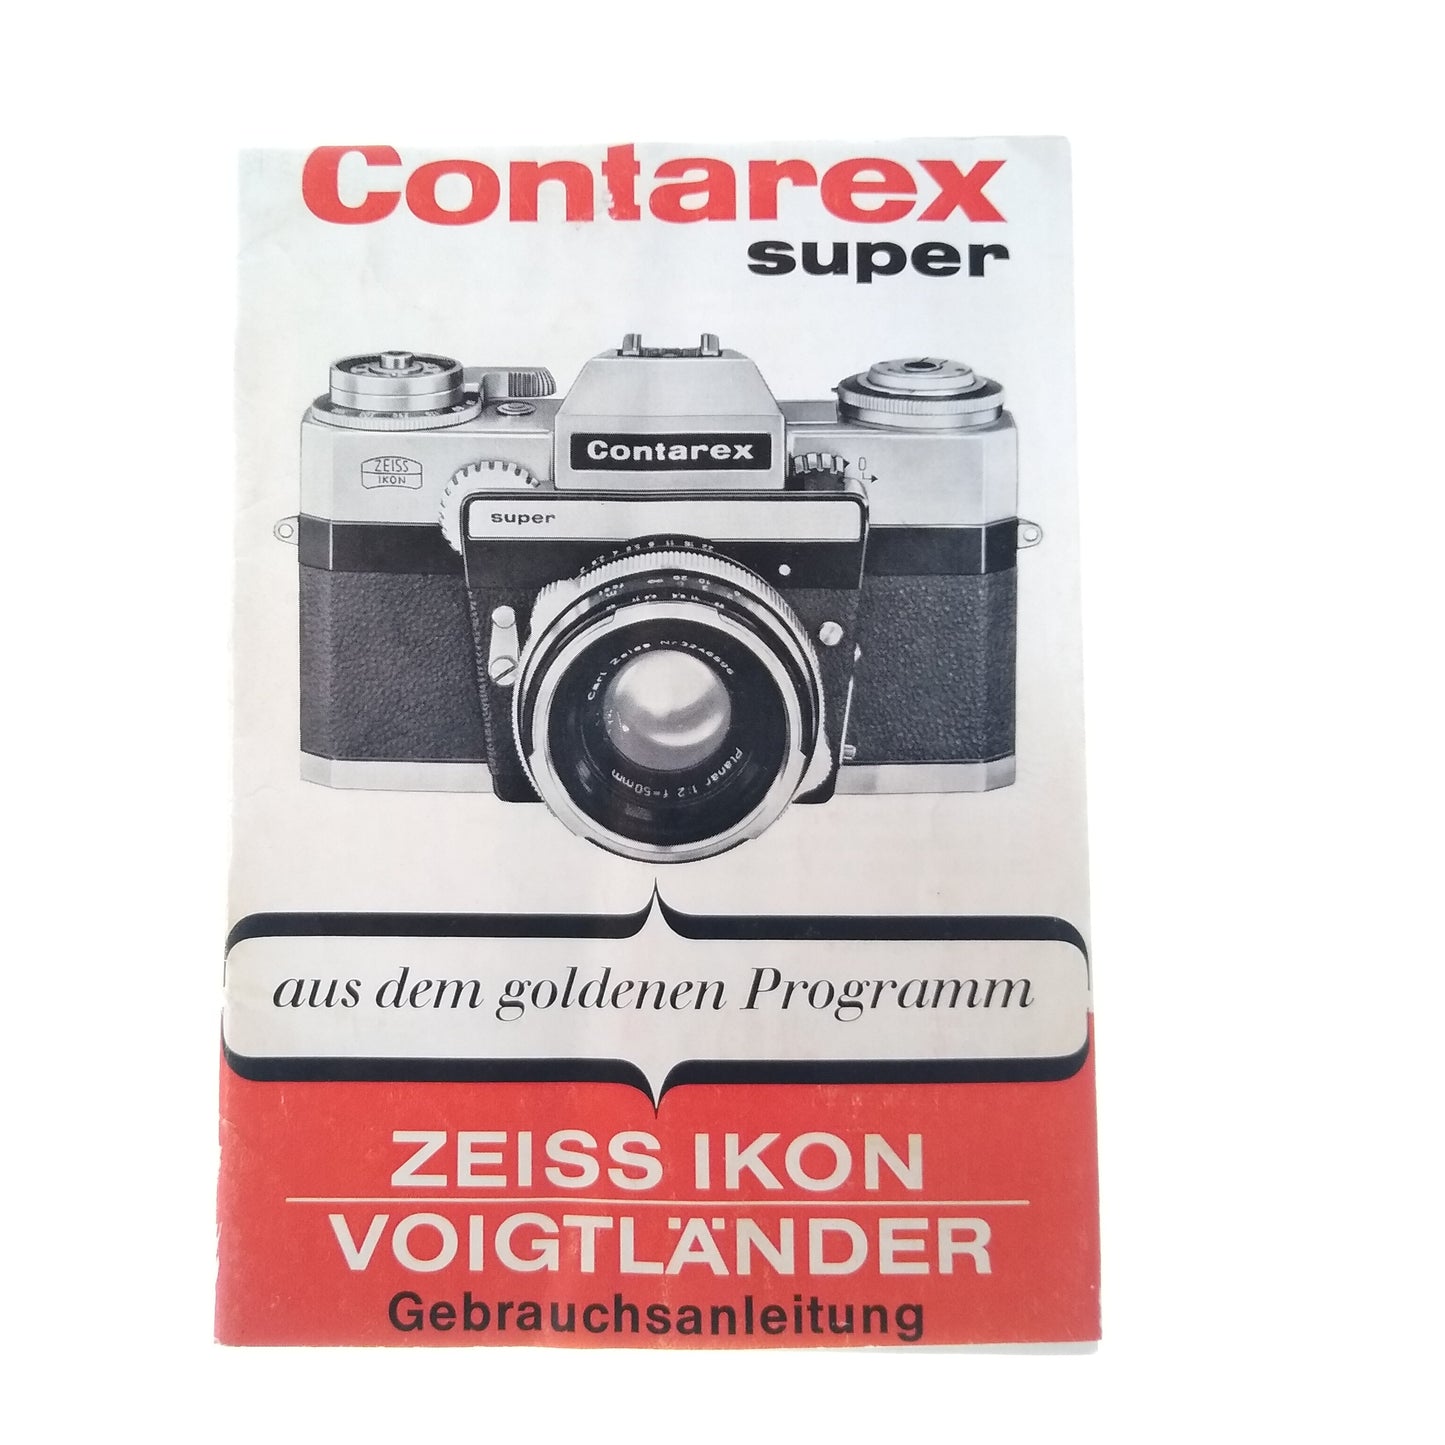 Contarex Super Instruction Manual (German).